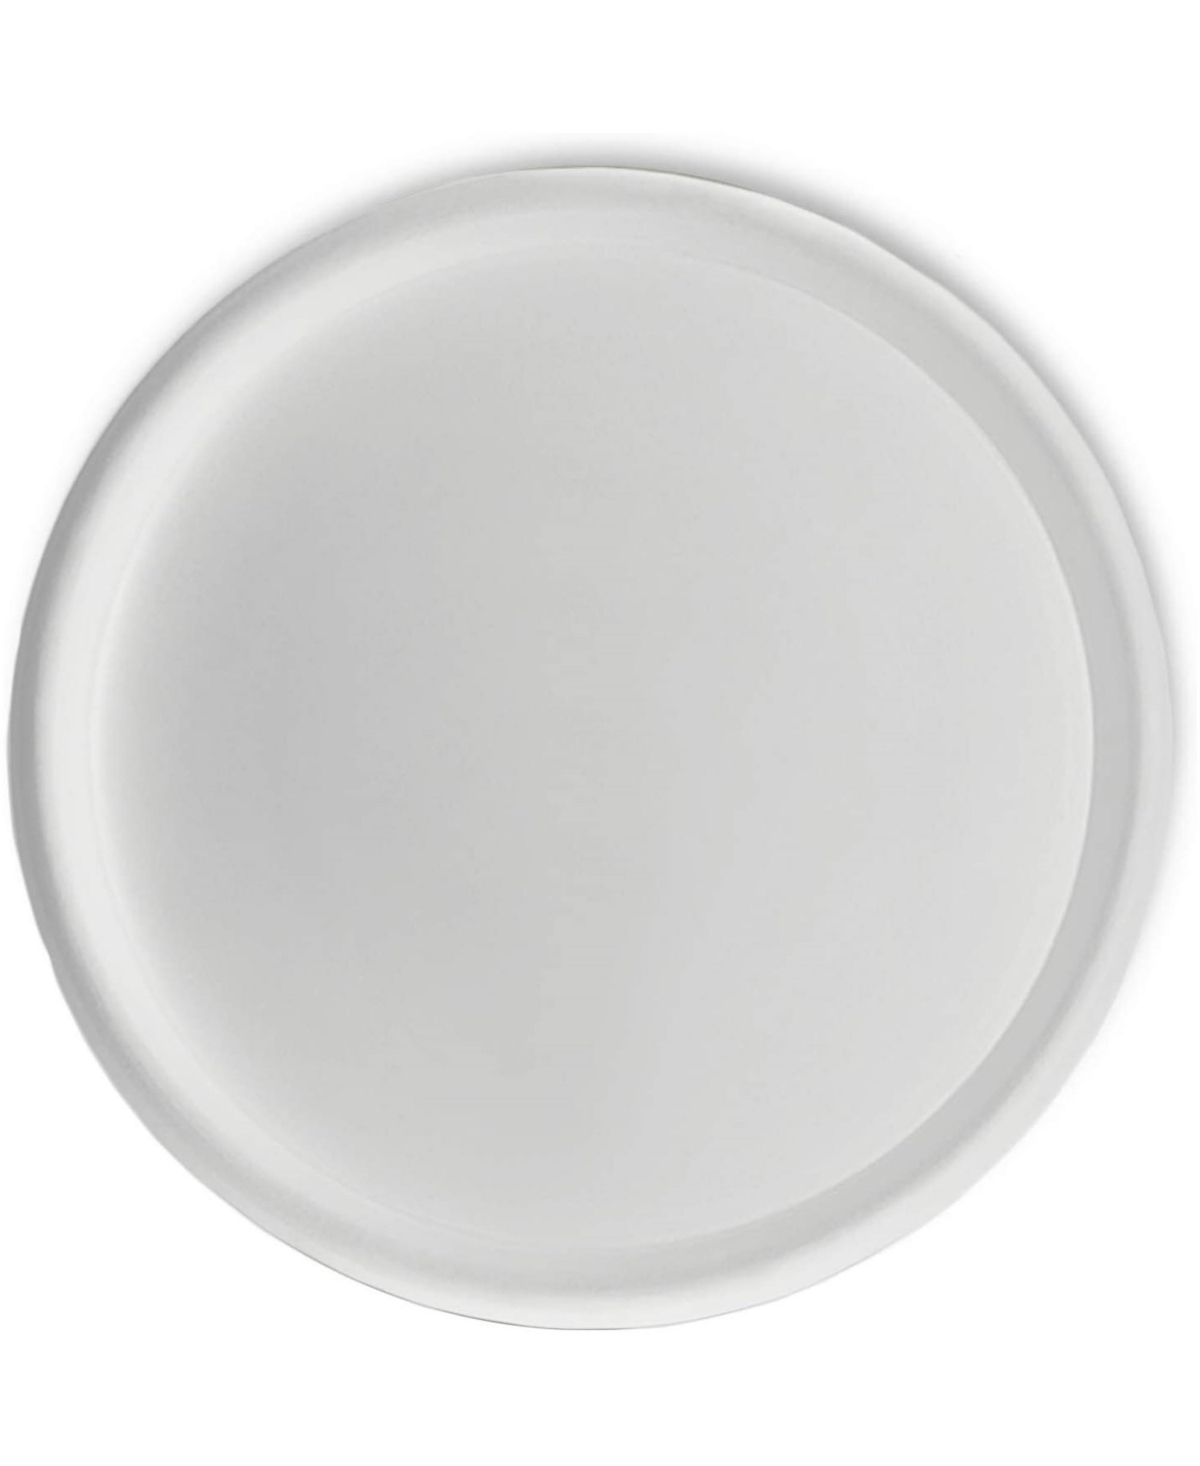 Universal Saucer, Round, Alpine White, 25.5in - White